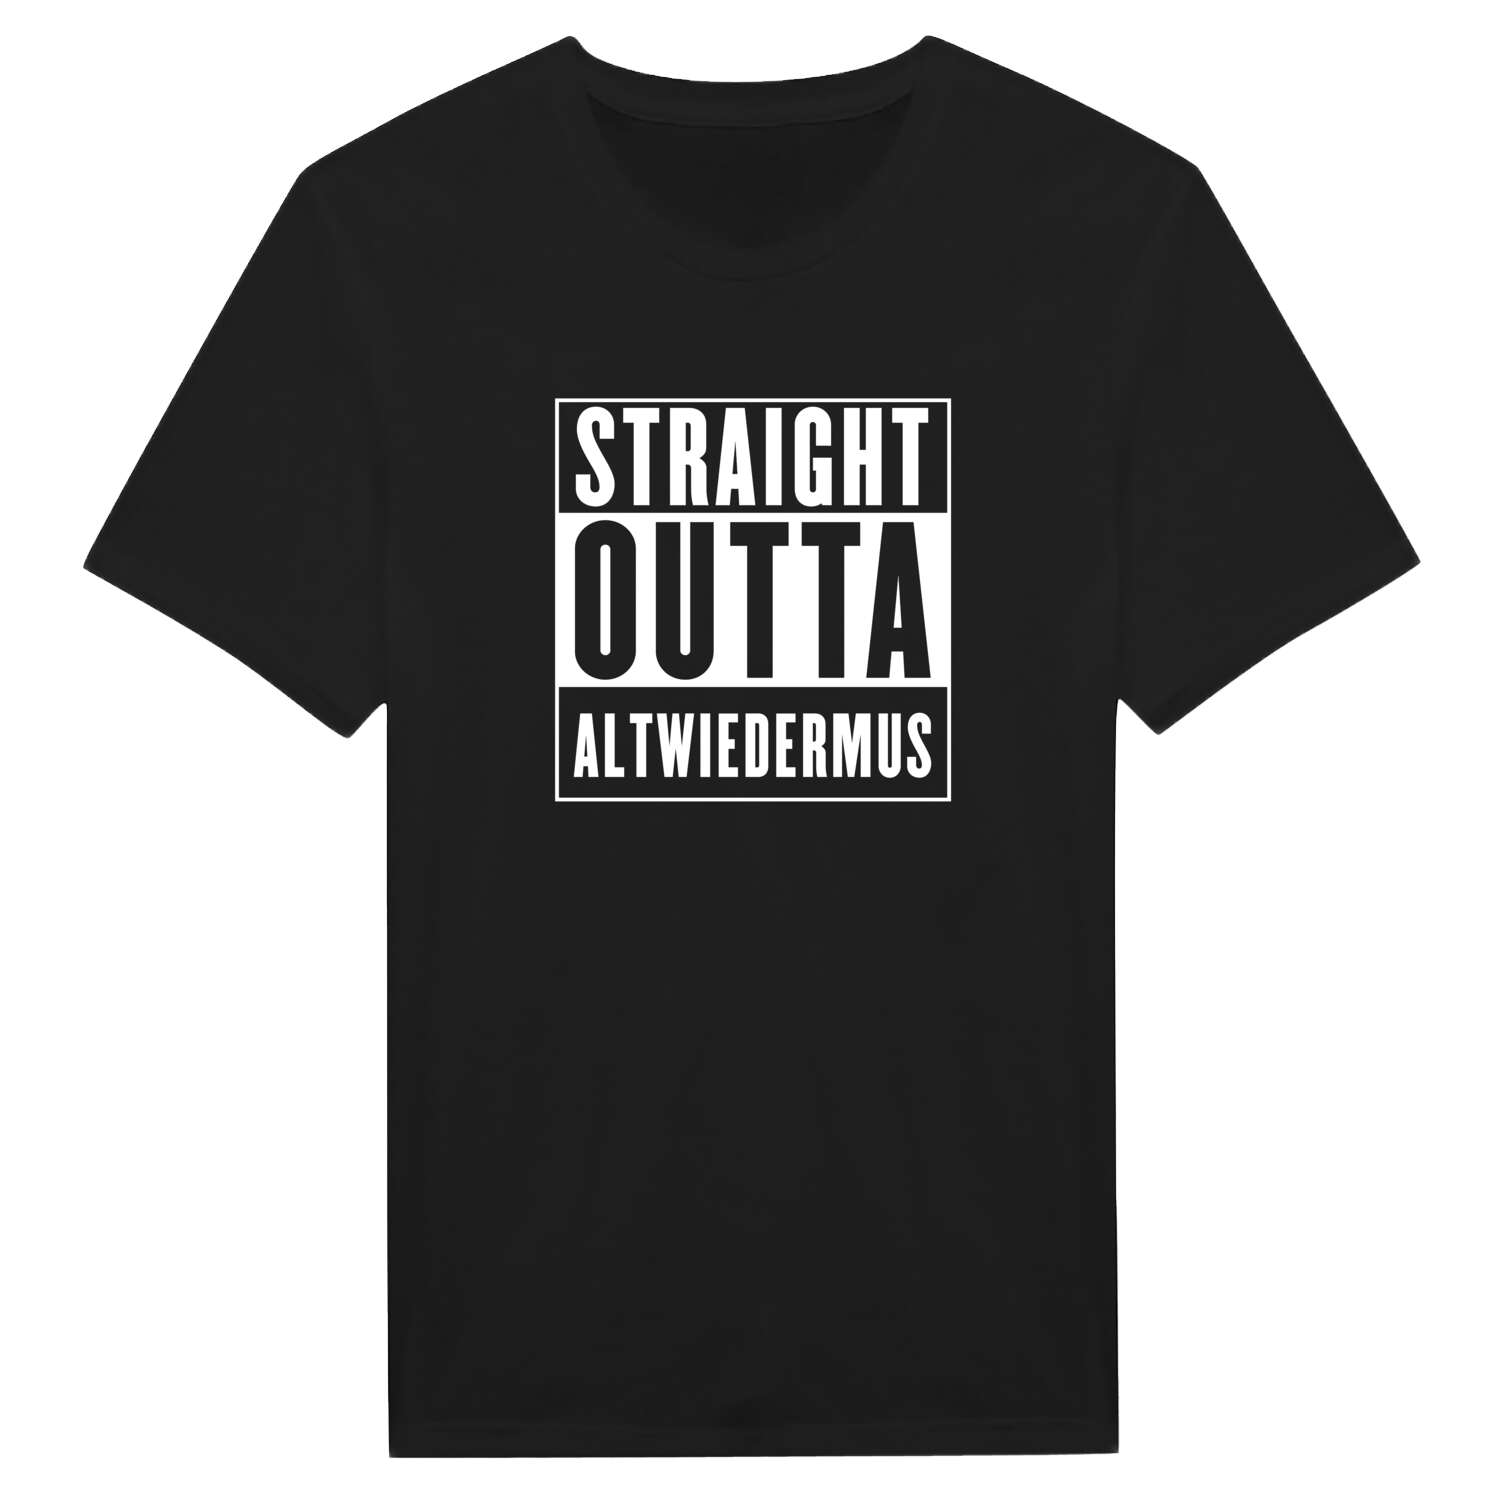 Altwiedermus T-Shirt »Straight Outta«